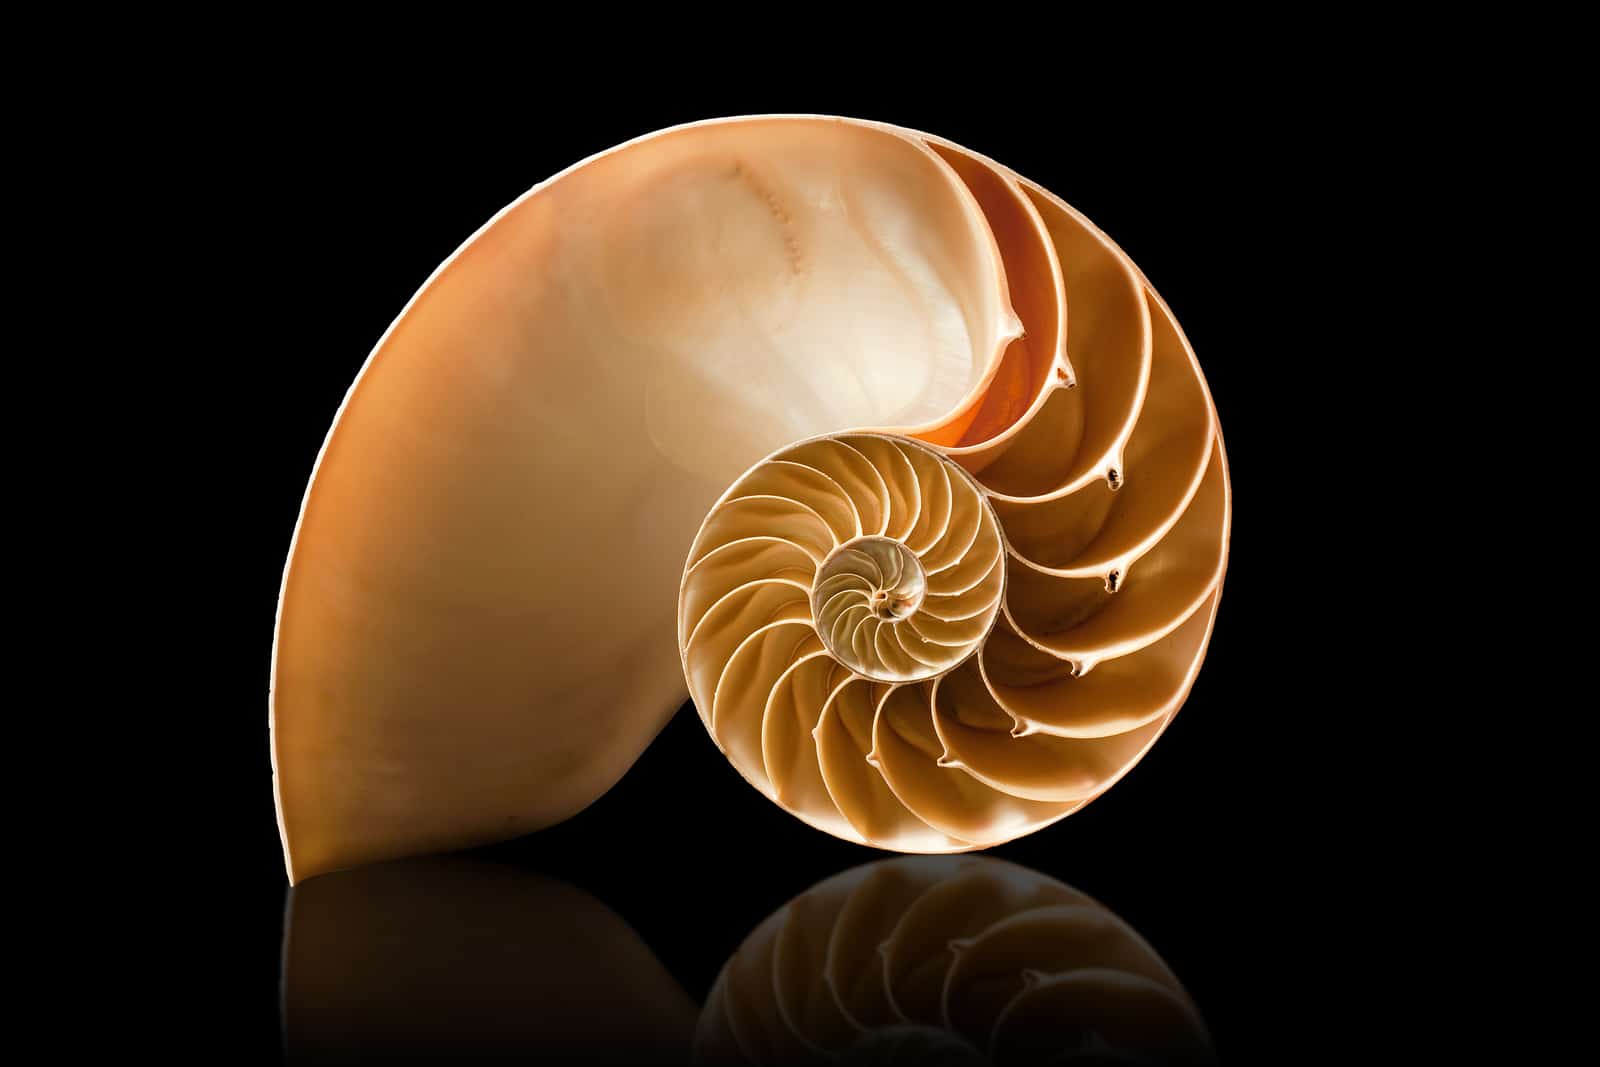 fibonacci in nature fibonacci sequence in shells